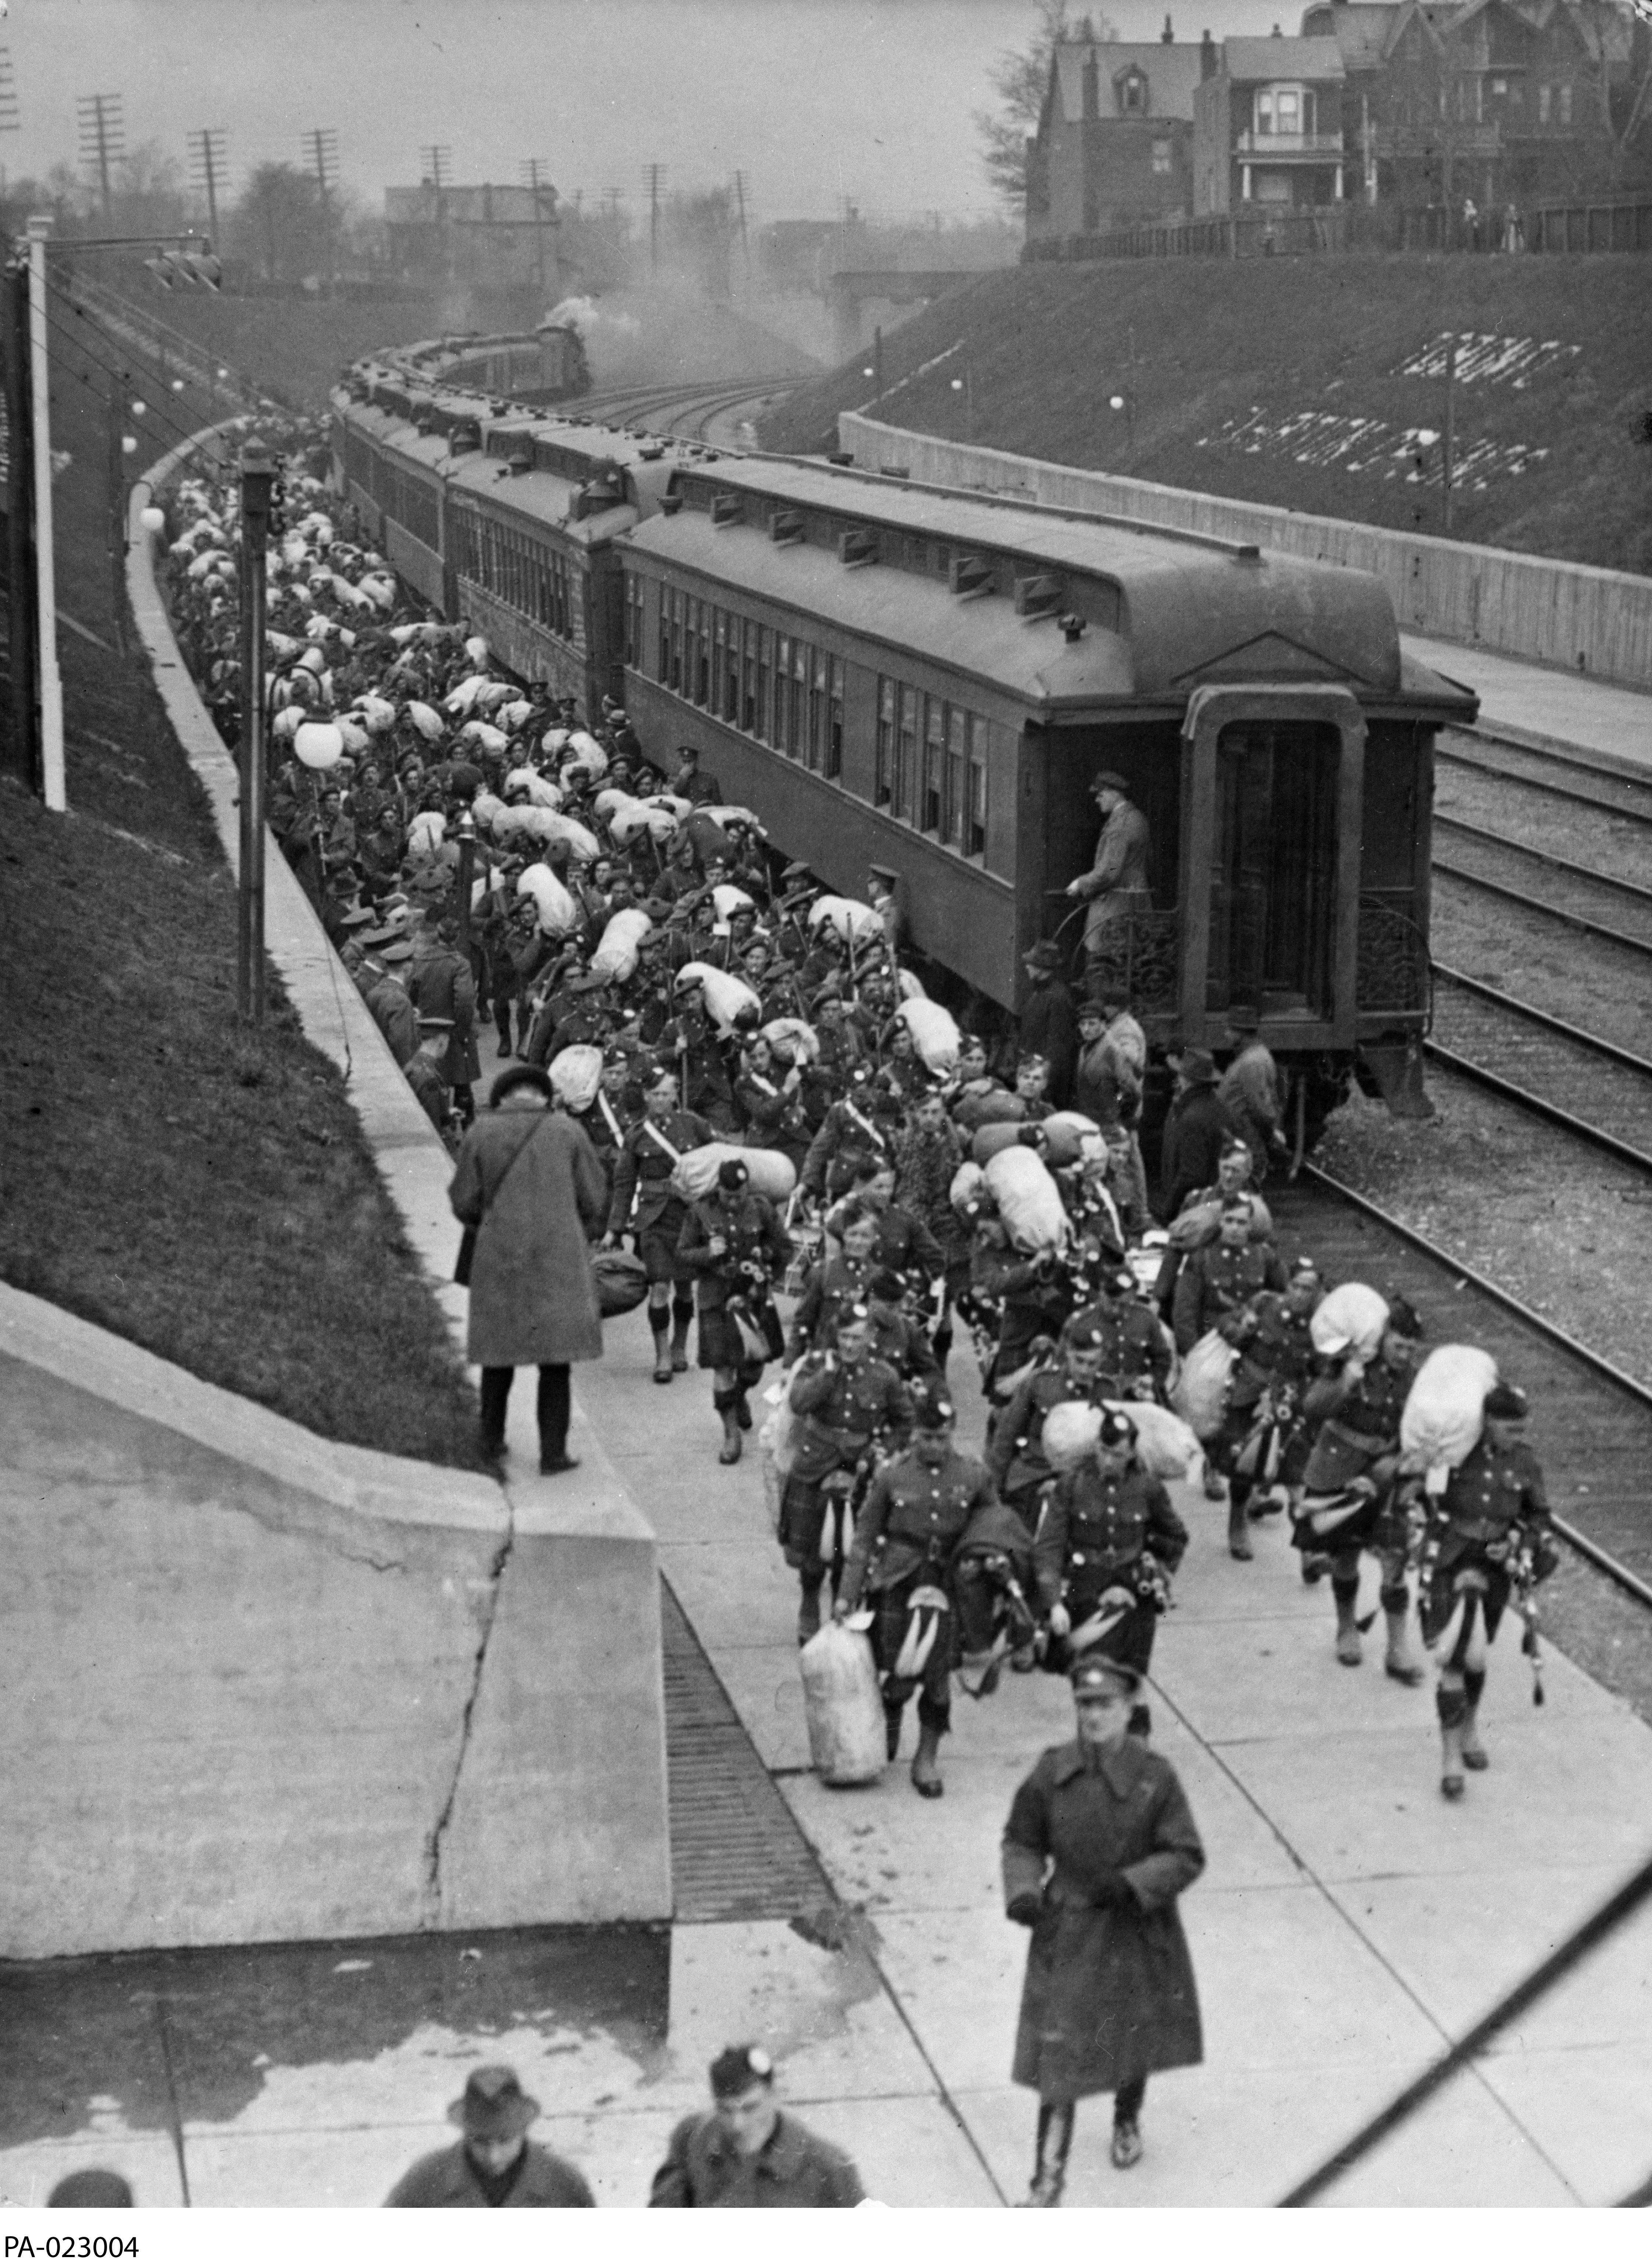 Photographie en noir et blanc – Des centaines de militaires portant un kilt marchent près du train dont ils ont débarqué. La voie ferrée se trouve entre des collines de verdure délimitées par un mur en ciment; un journaliste prend des notes ou une photo.